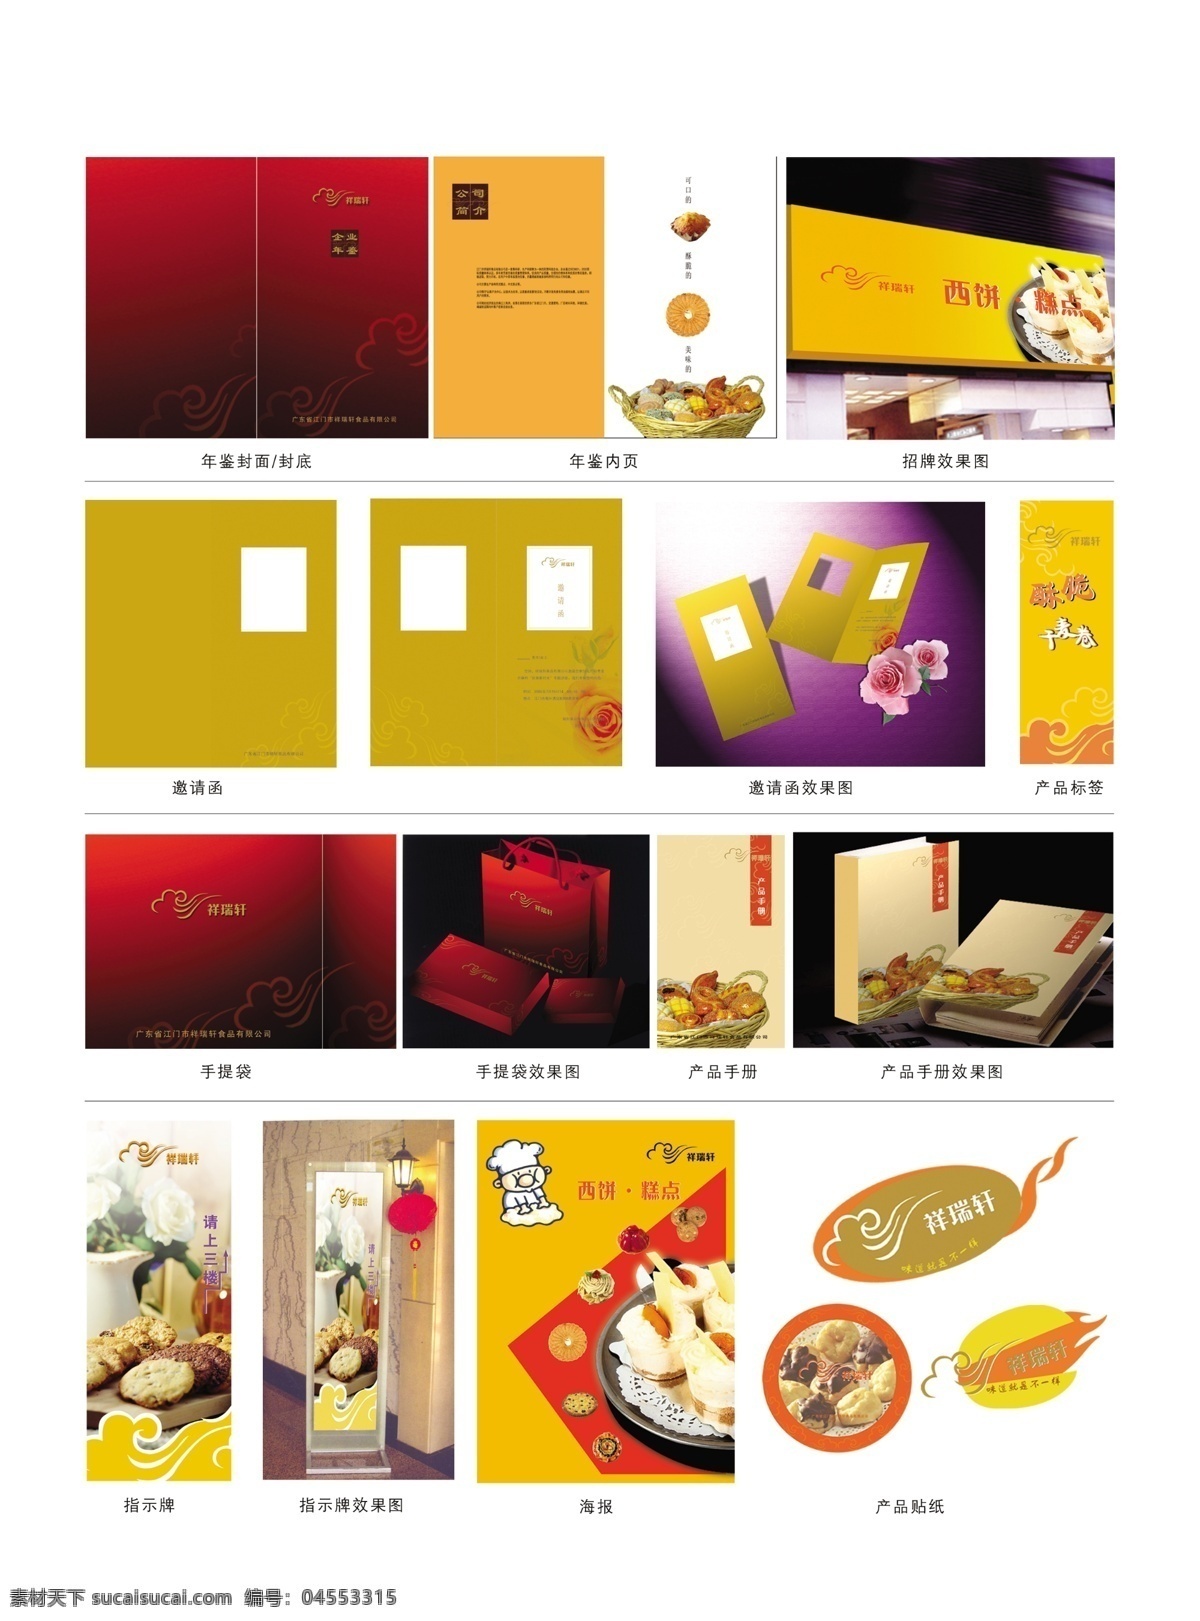 包装盒 体 餐饮设计 产品手册 产品贴纸 产品形象设计 产品折页 手提袋设计 psd源文件 包装设计